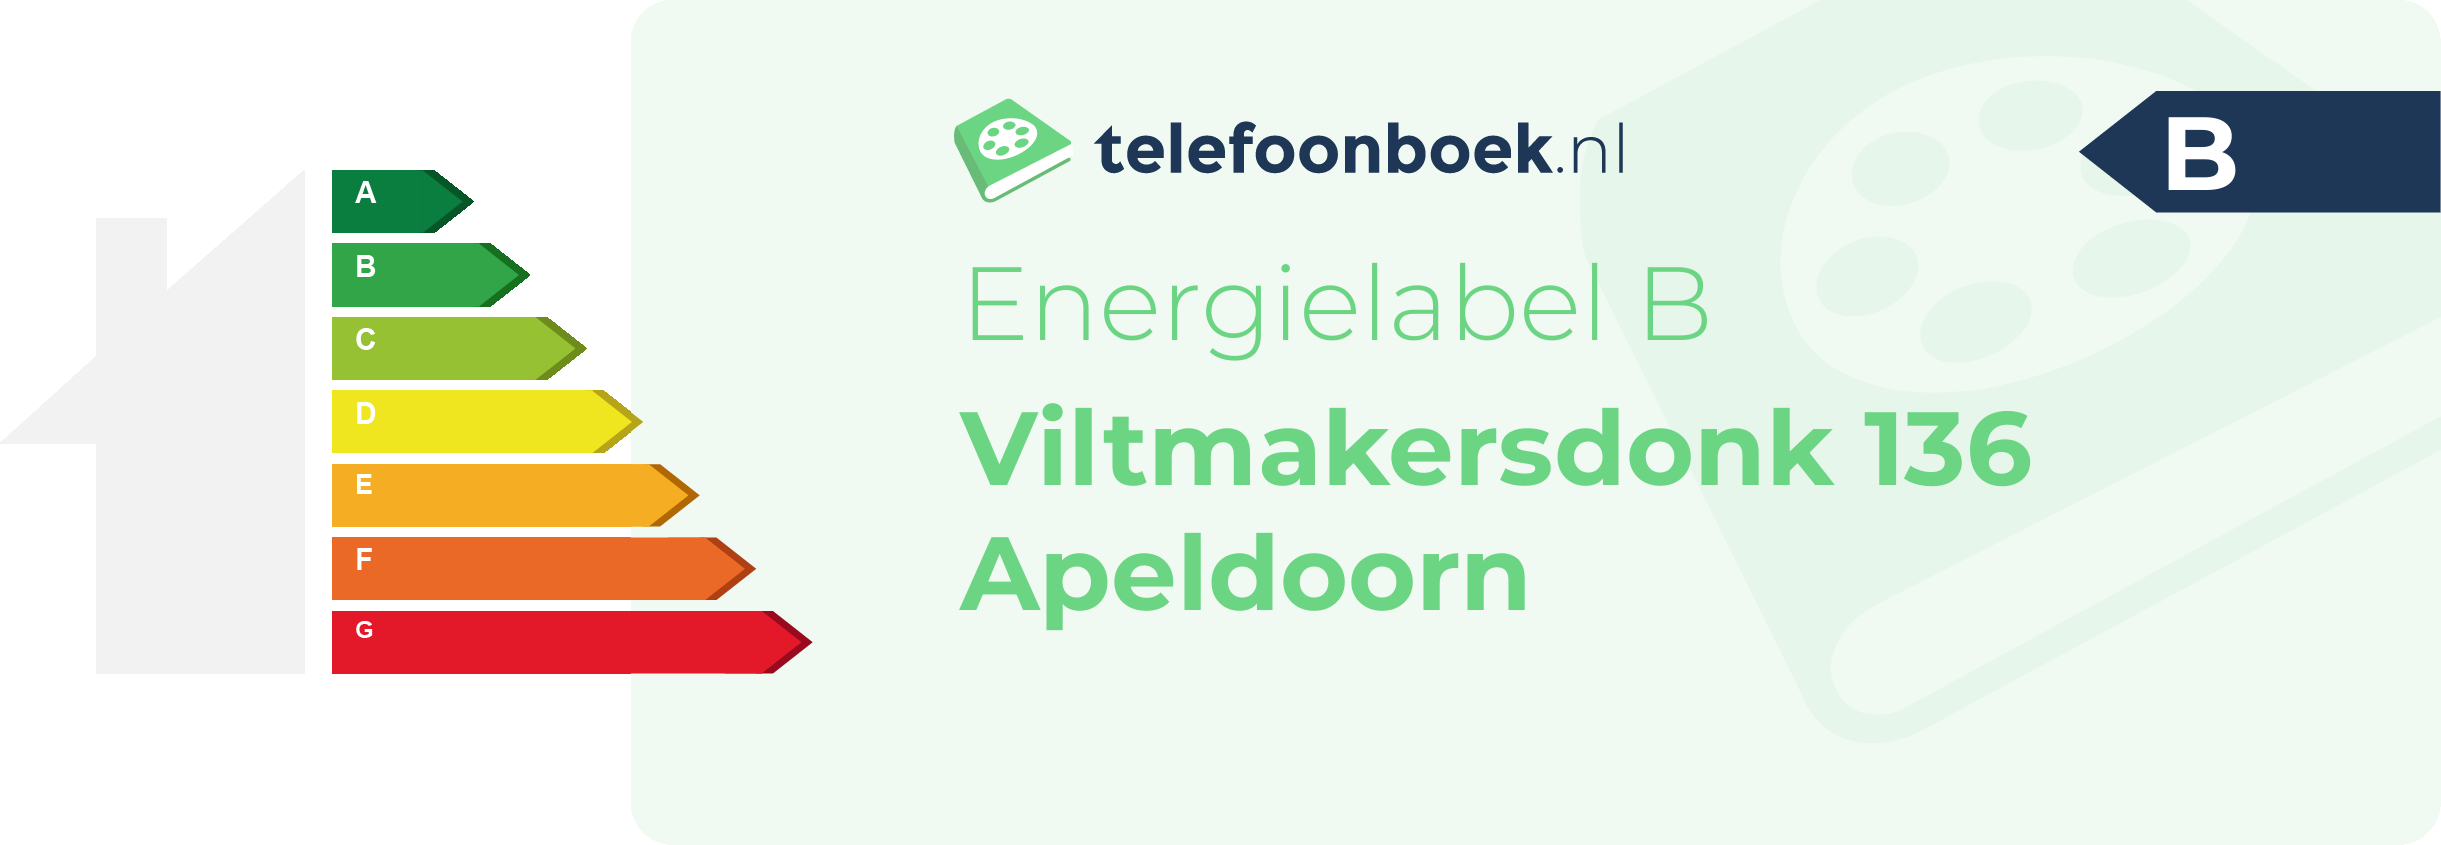 Energielabel Viltmakersdonk 136 Apeldoorn